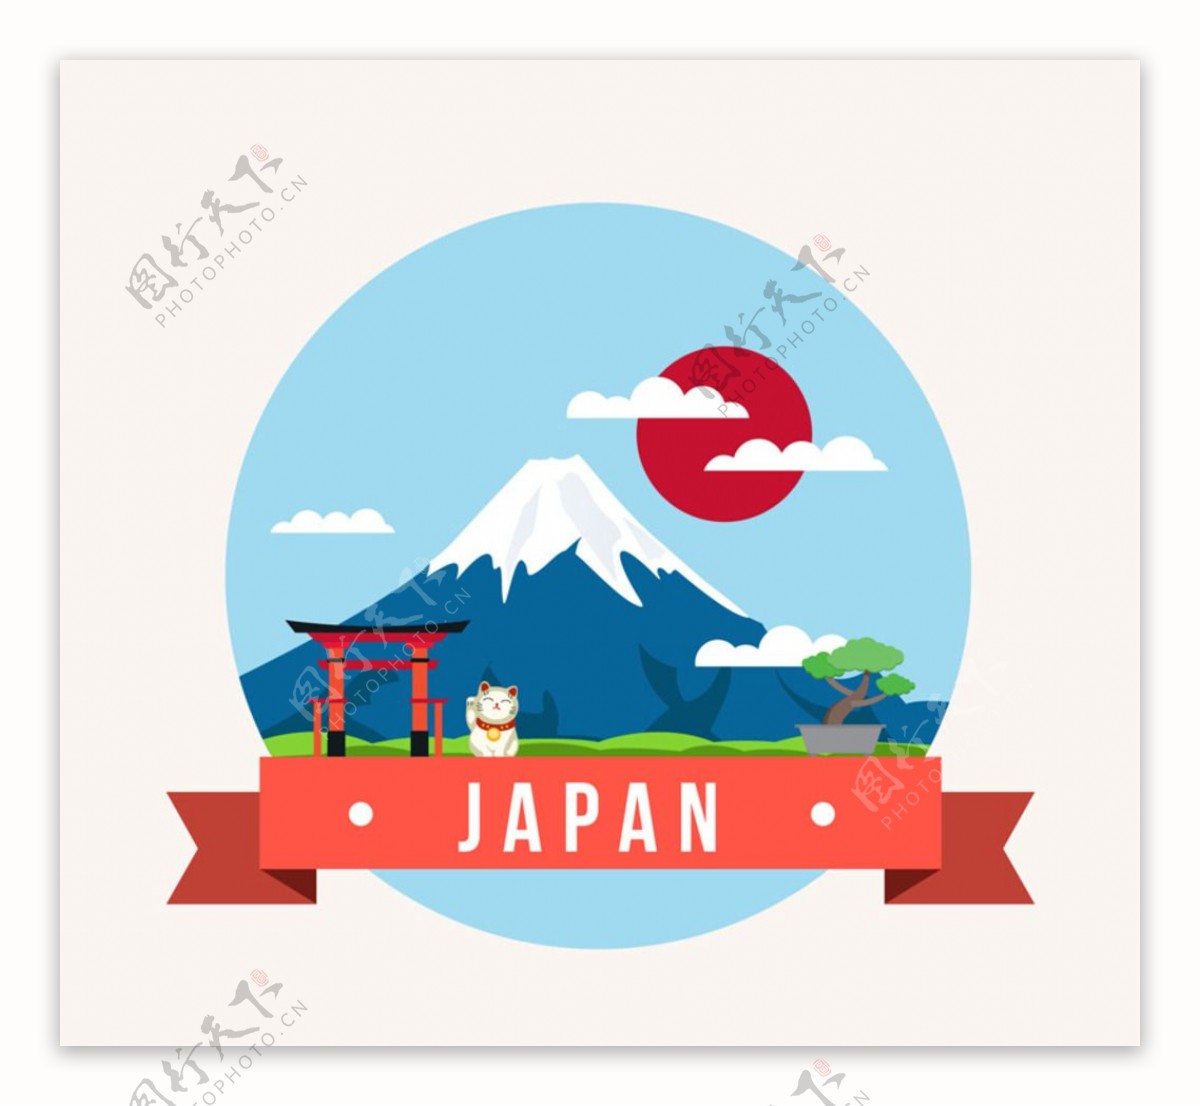 创意日本风景插画矢量素材